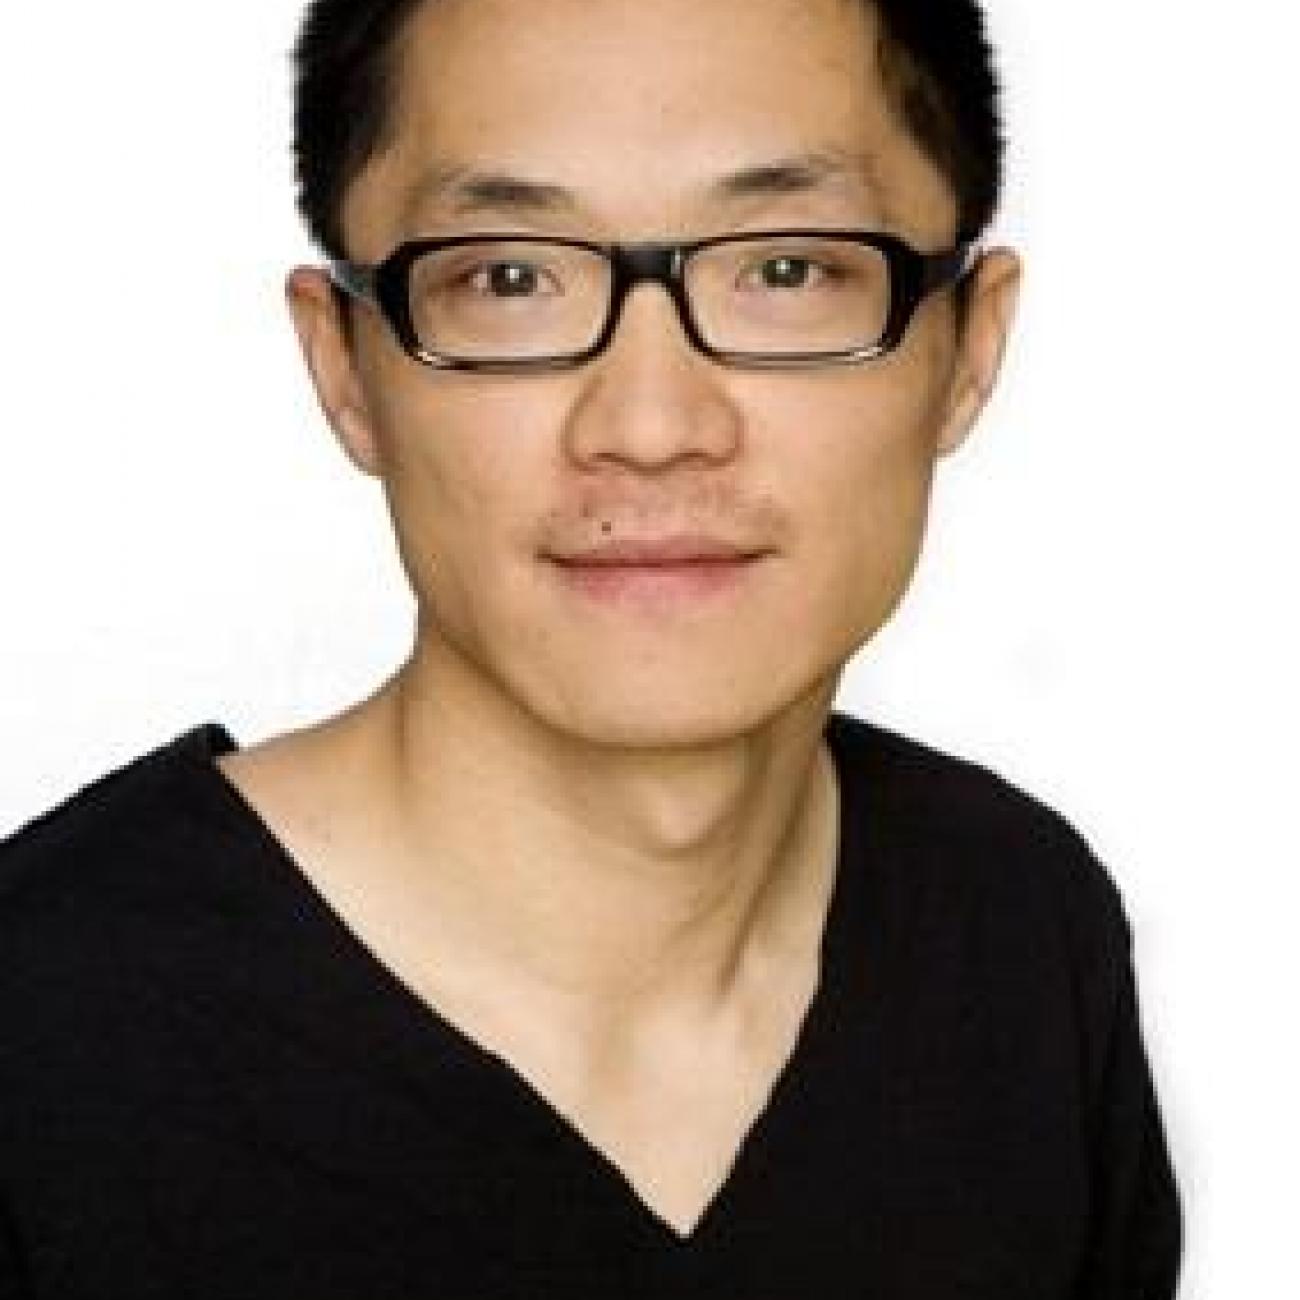 Professor Li-Chun Zhang